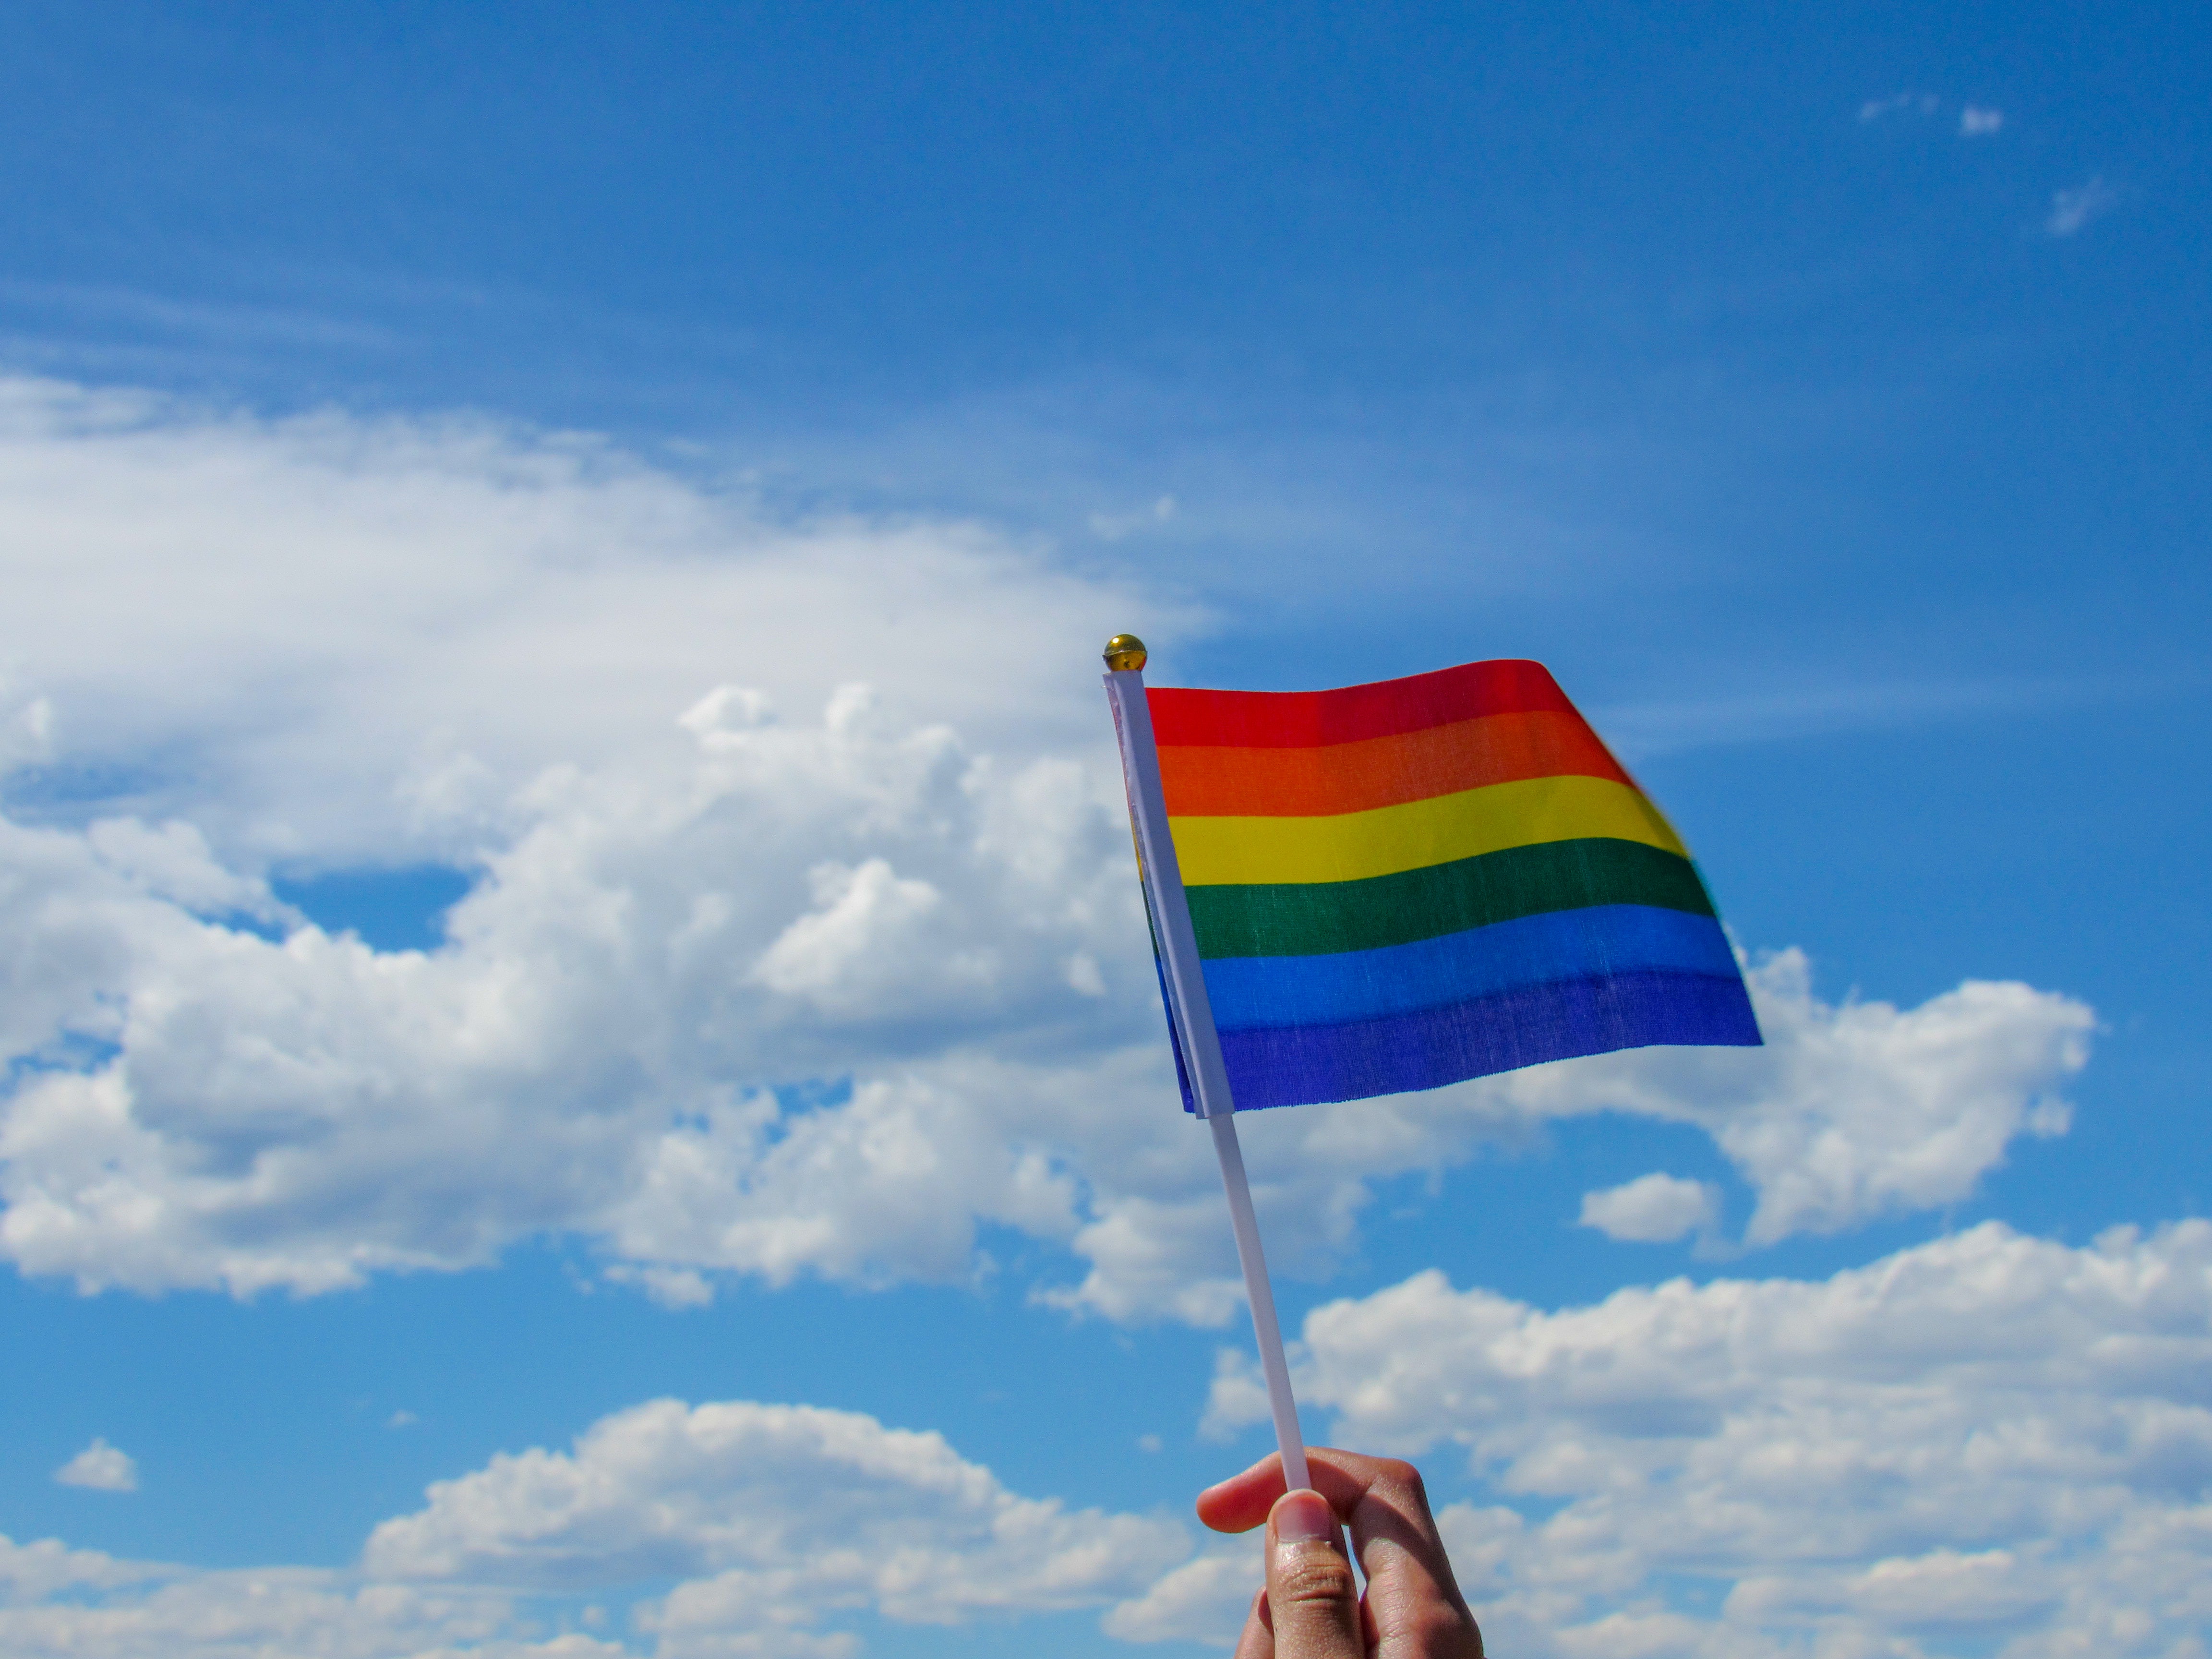 En himmel med där en hand håller upp regnbågsflaggan